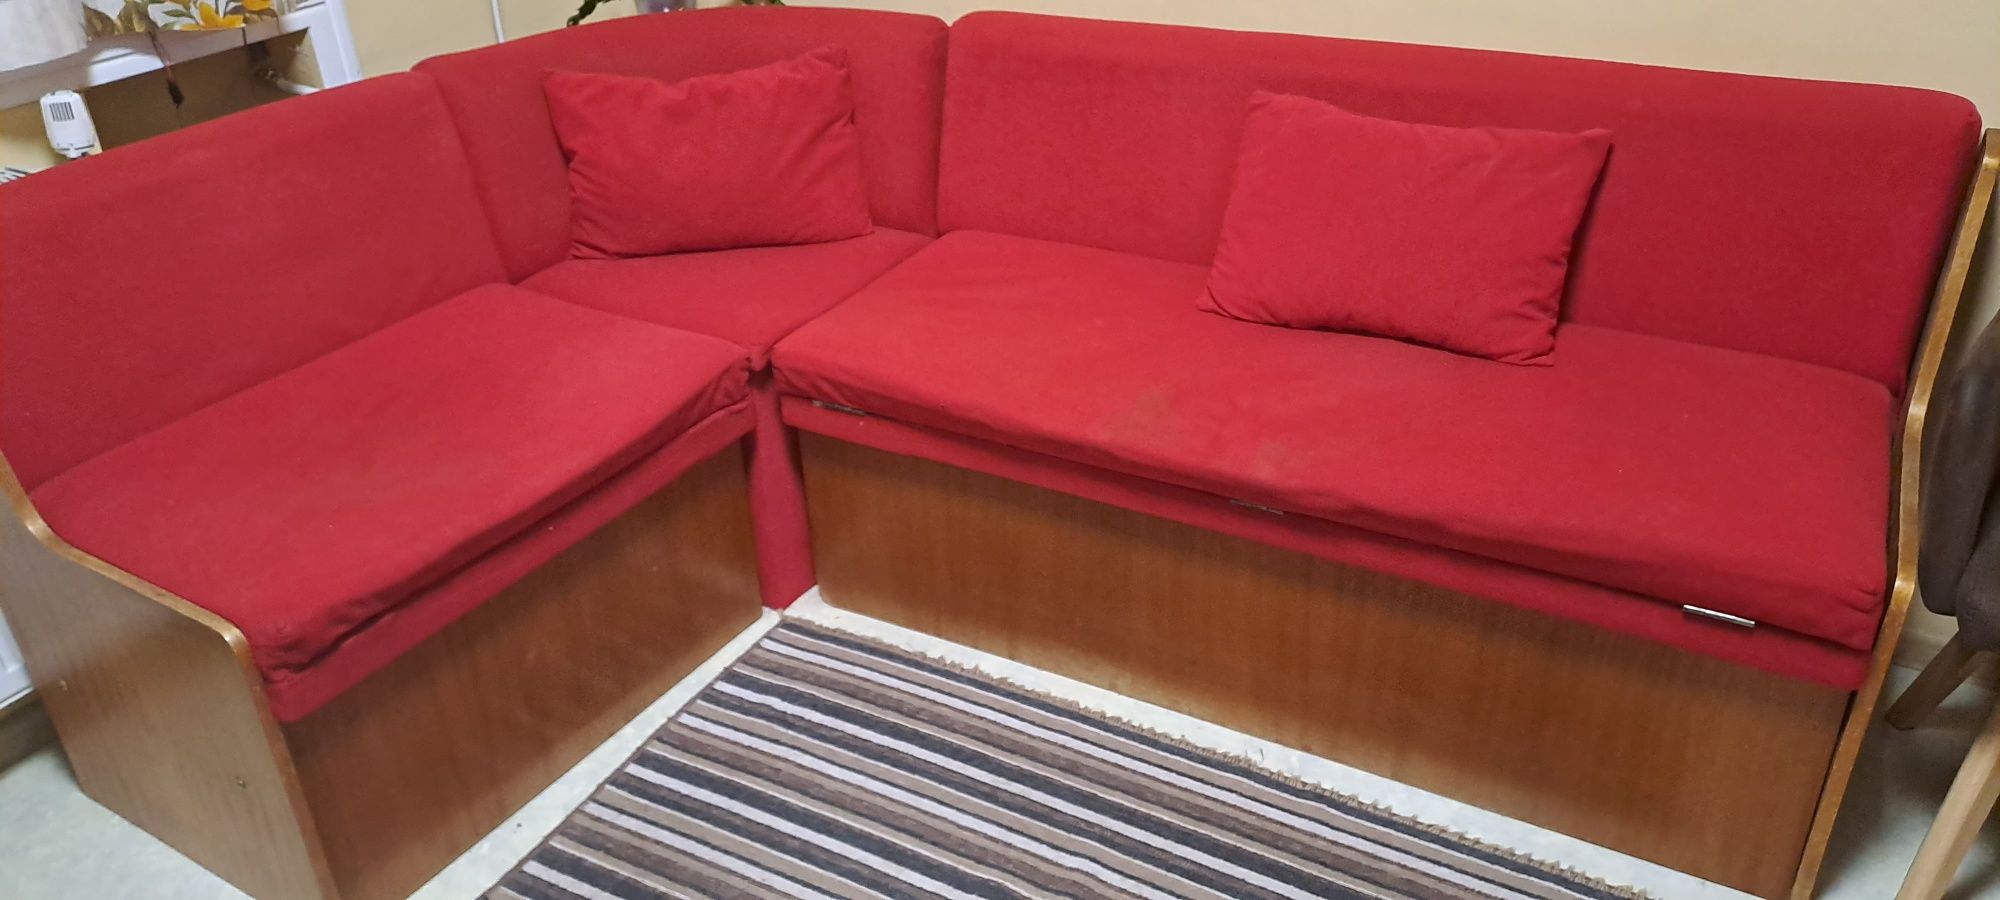 Кухненски диван,удобен и практичен с 3 раклички..